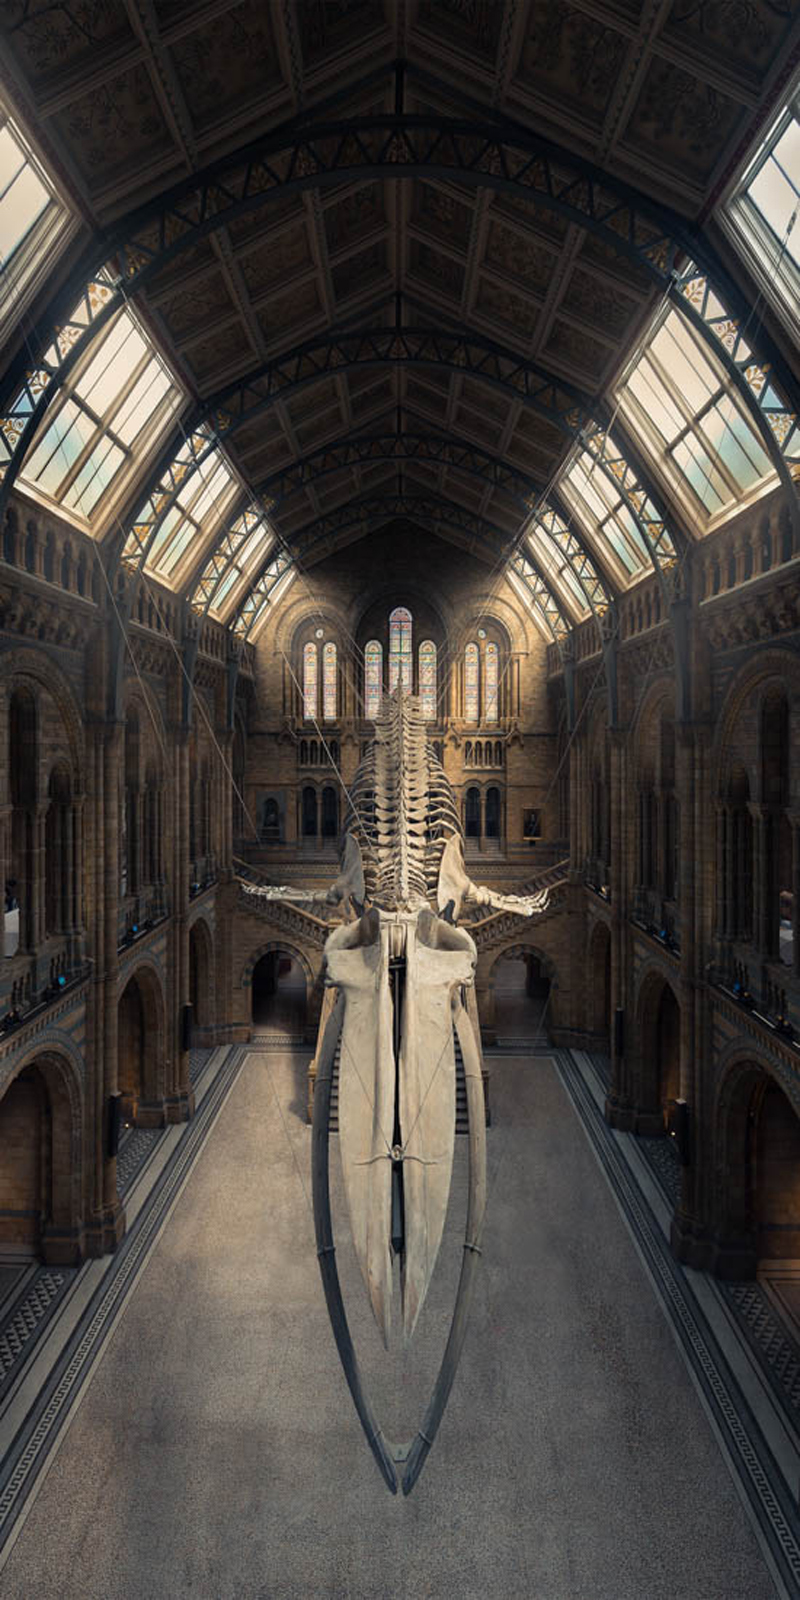 Ο επιβλητικός σκελετός της μπλε φάλαινας στο Μουσείο Φυσικής Ιστορίας του Λονδίνου, σε μία κάθετη πανοραμική λήψη